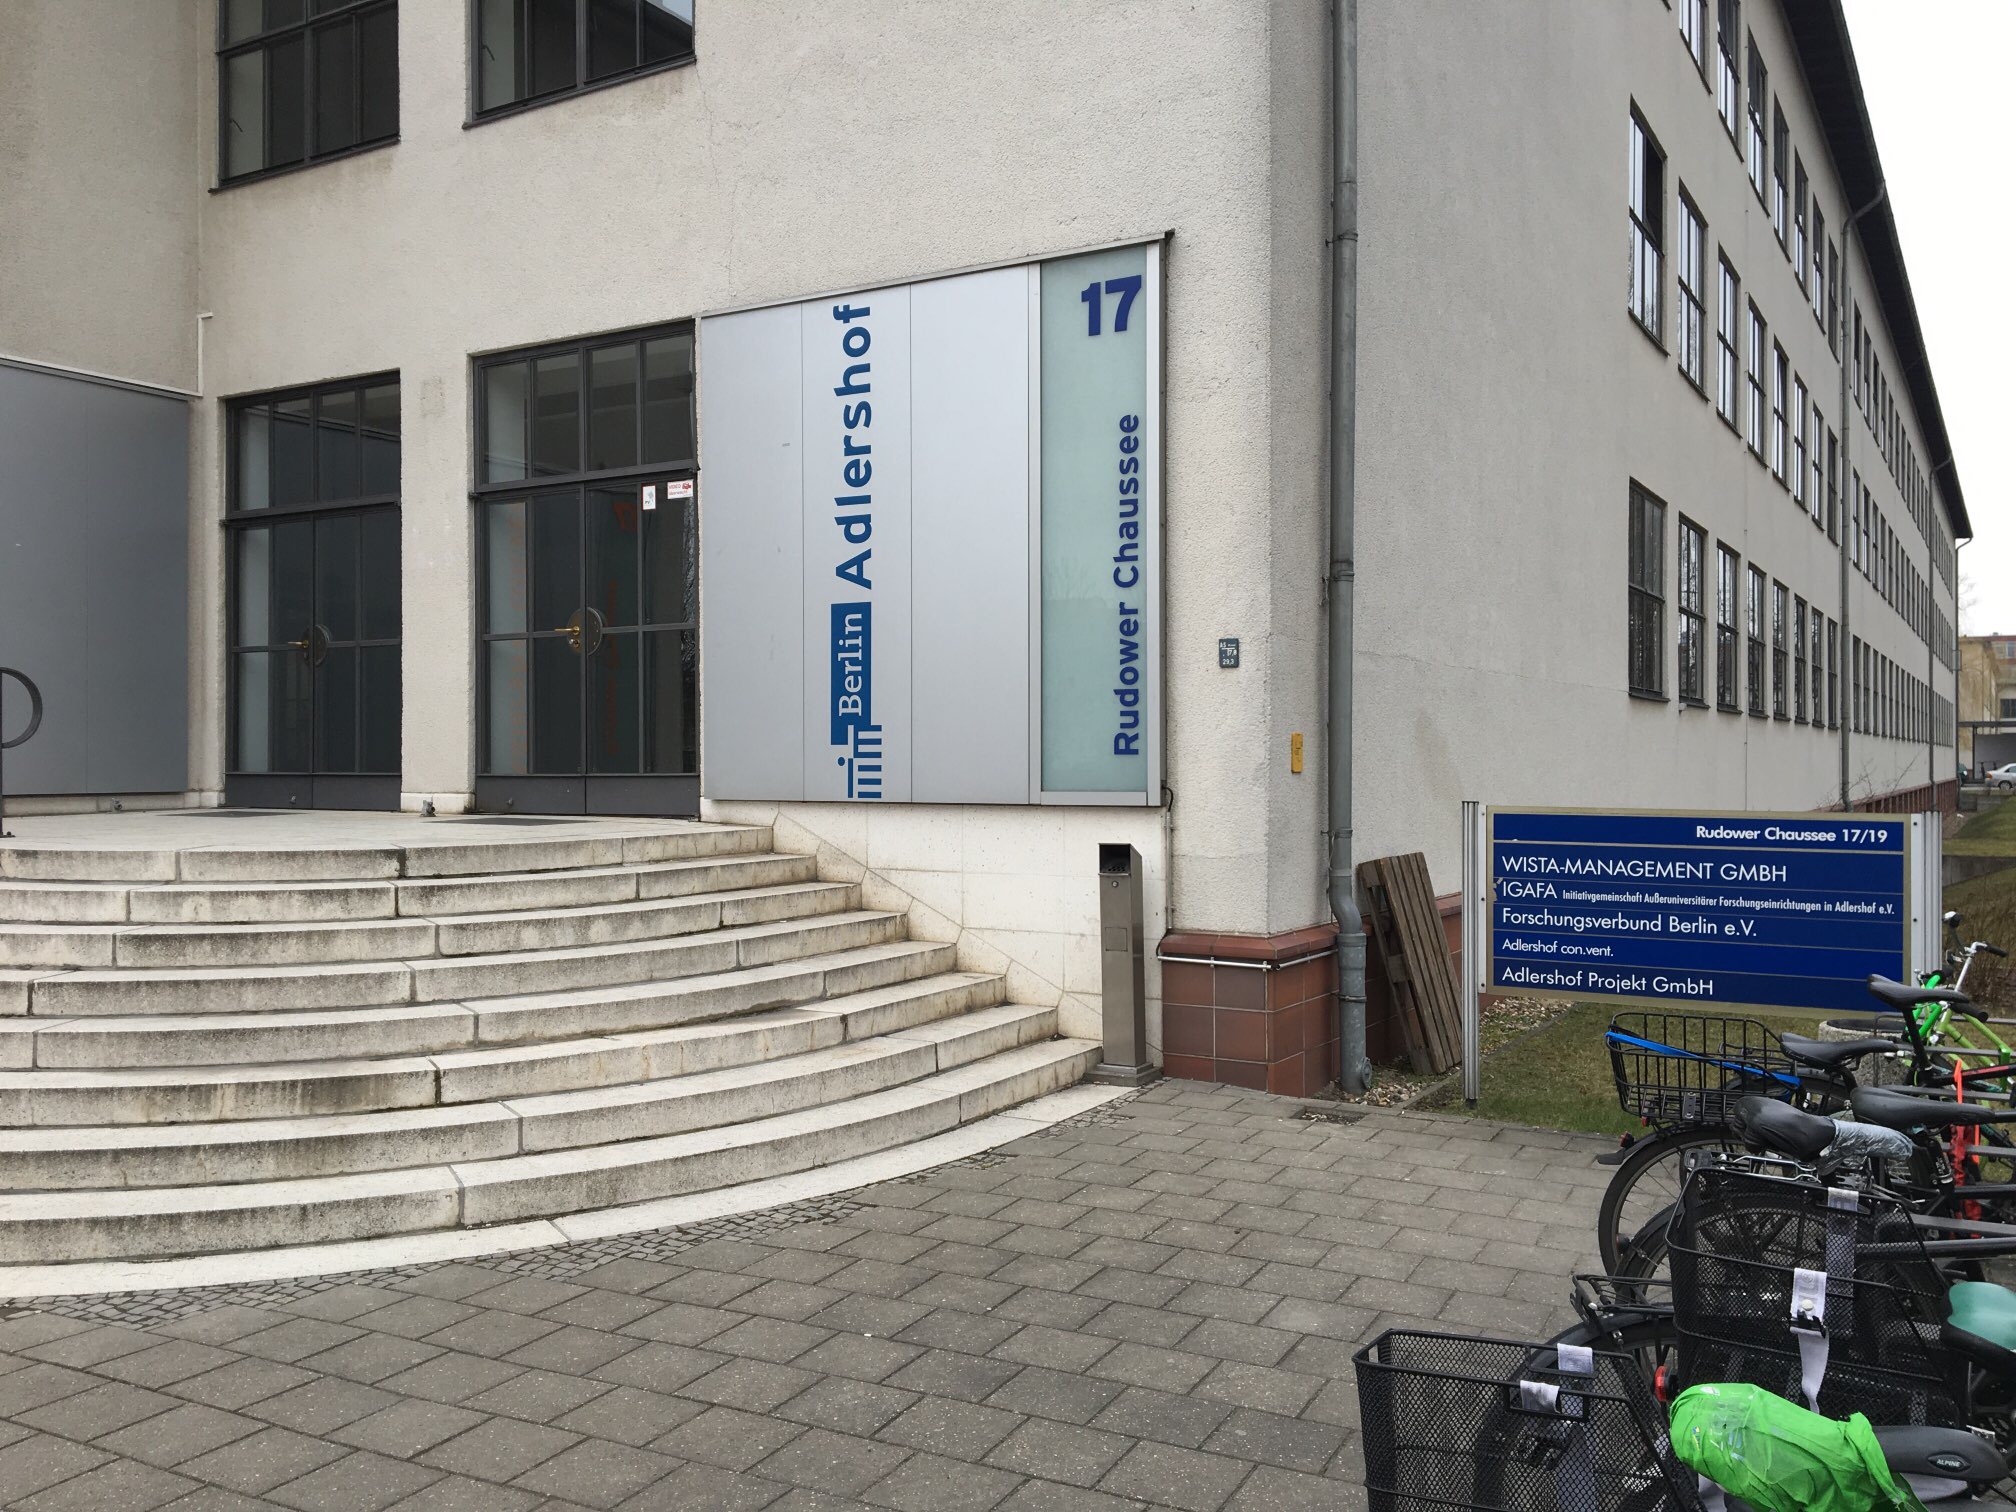 Bild 4 Wista-Management GmbH in Berlin